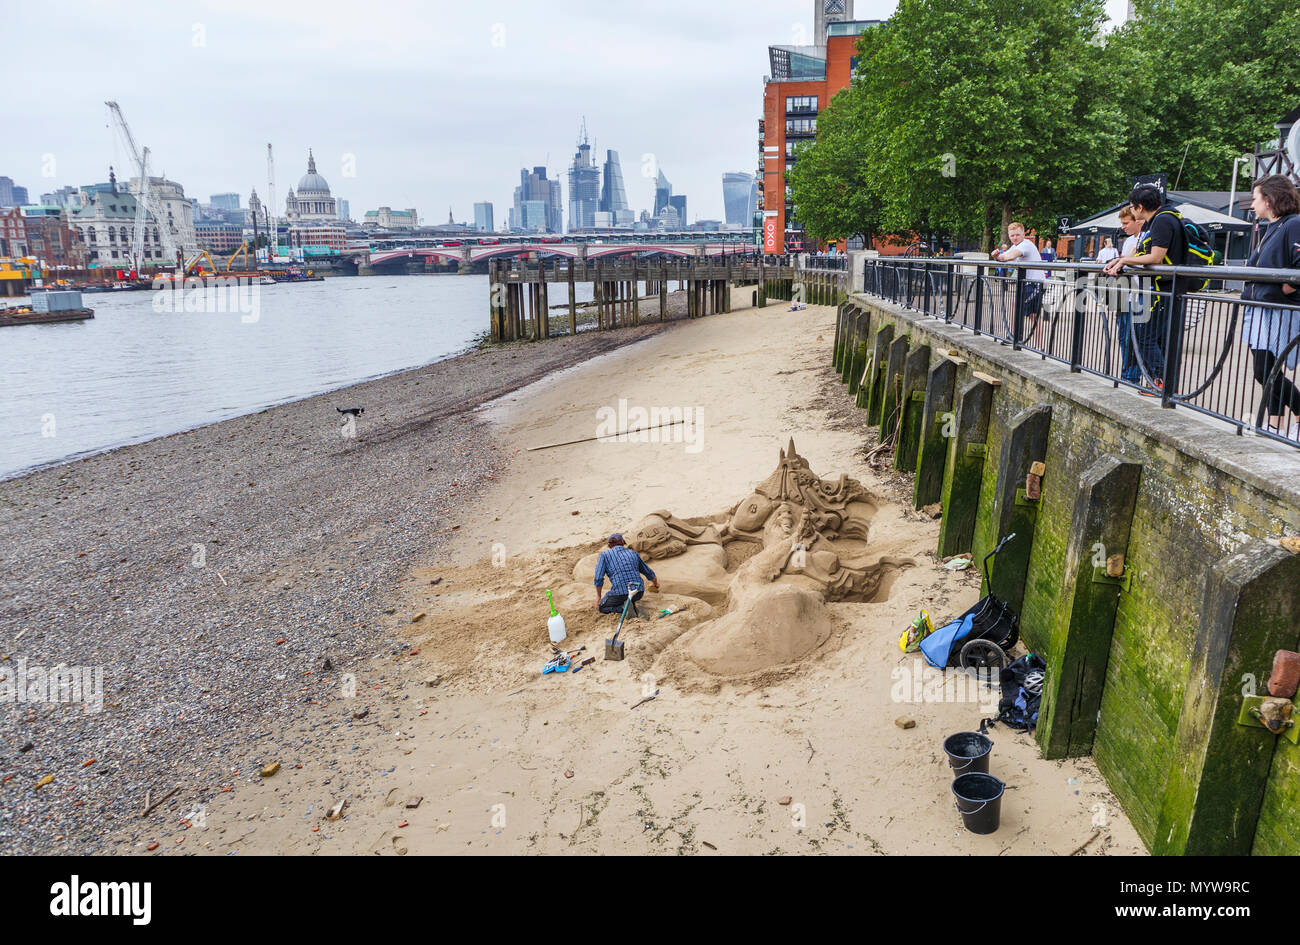 Scultore di sabbia lavorando su una scultura su una spiaggia a bassa marea lungo il fiume Tamigi, South Bank Embankment riverside walkvnear Oxo Tower Wharf, London SE1 Foto Stock